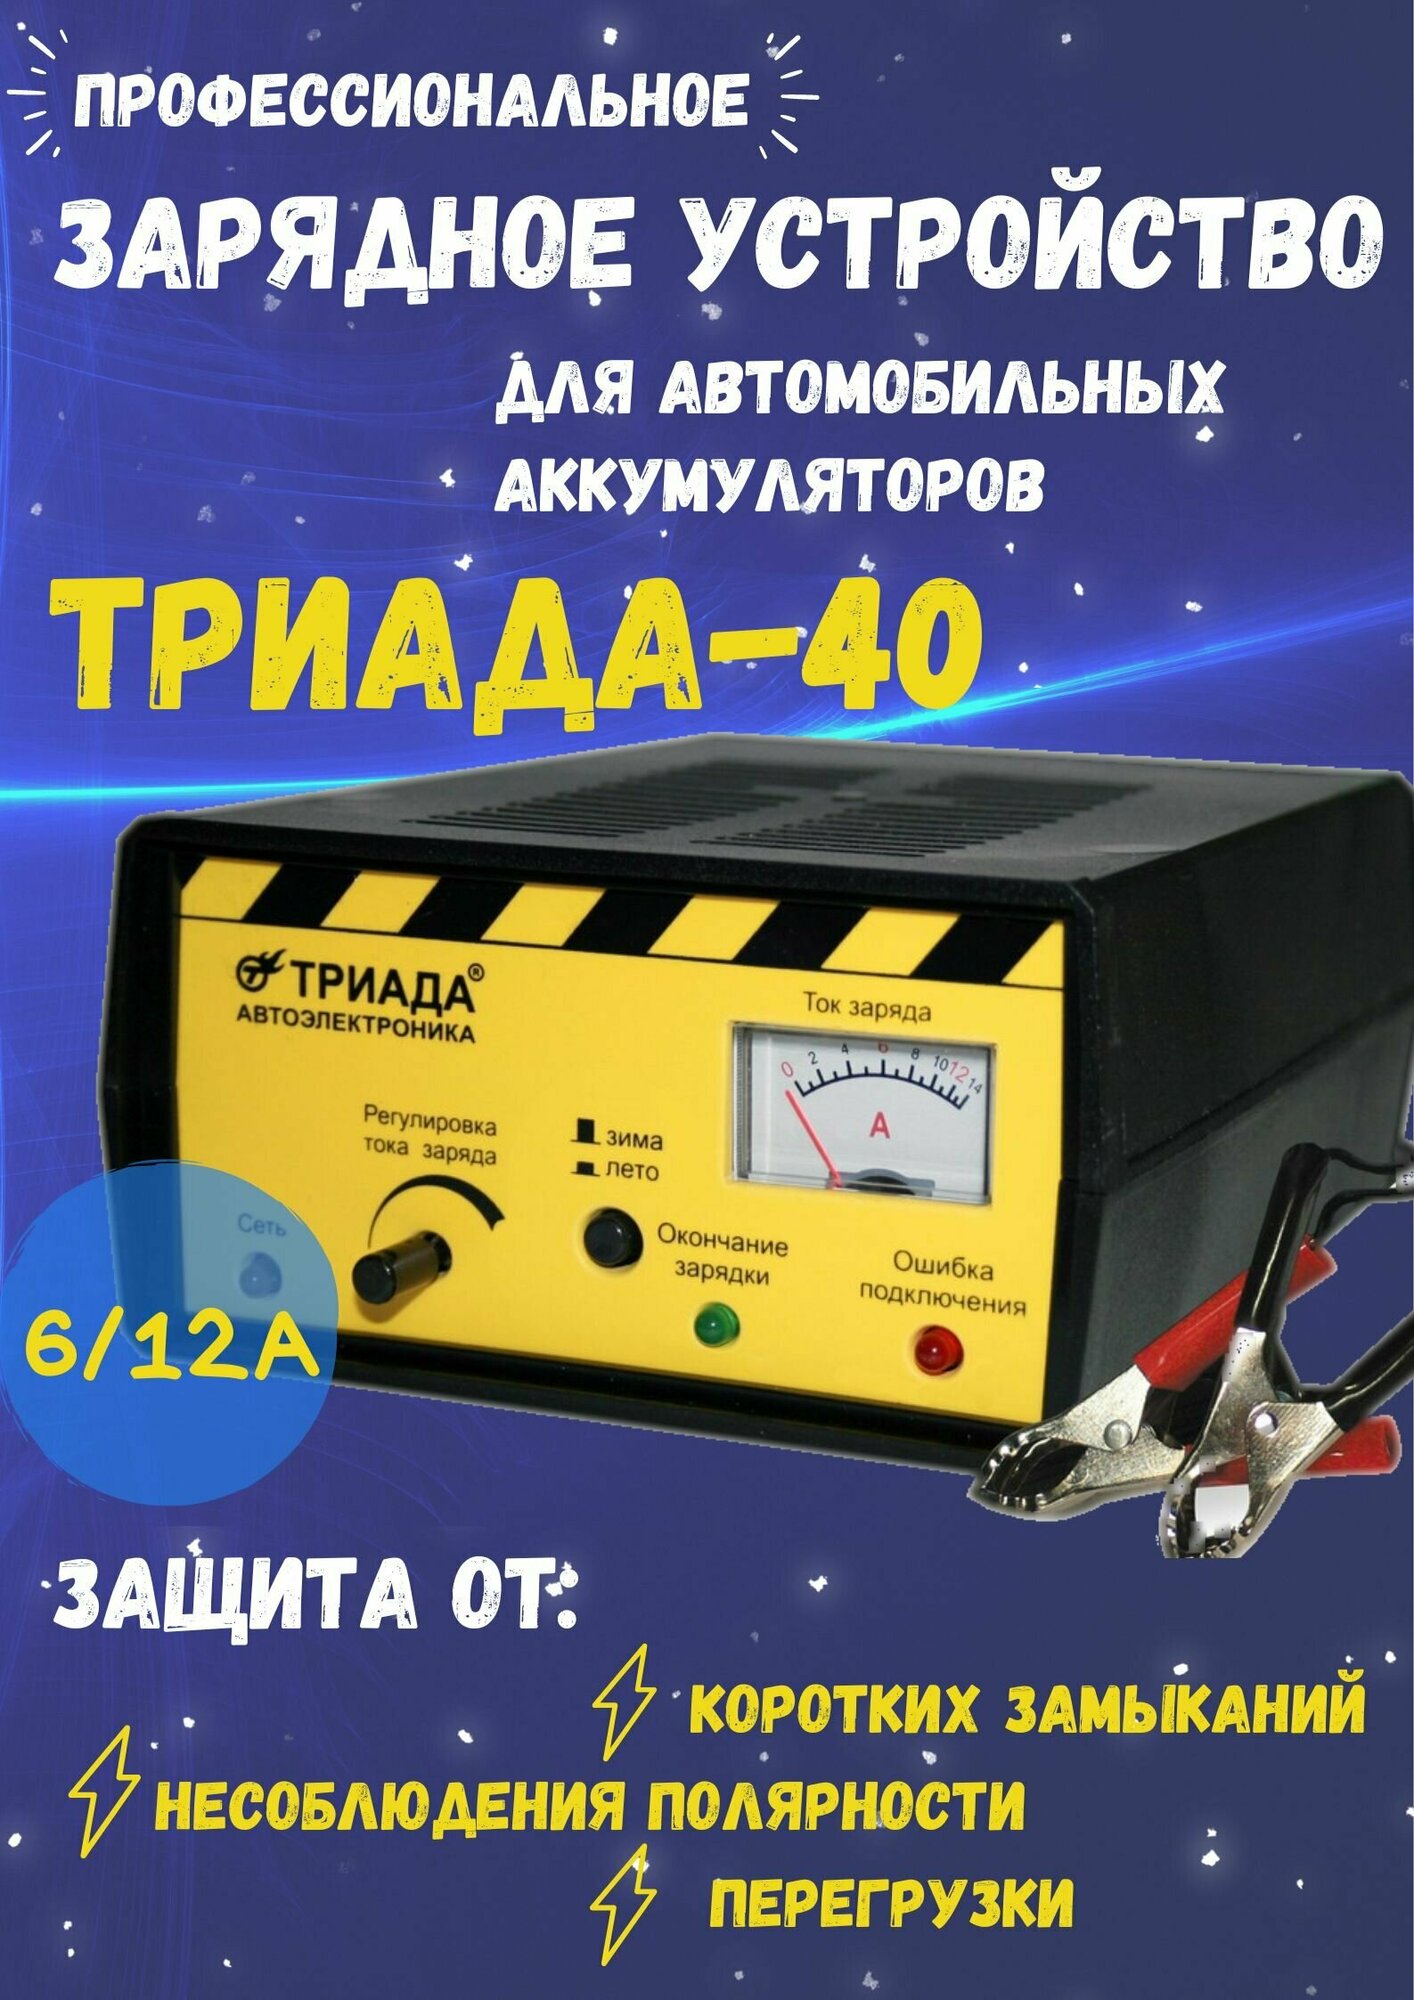 Профессиональное импульсное зарядное устройство "Триада-40". 2 режима работы: 6/12 А зима/лето.